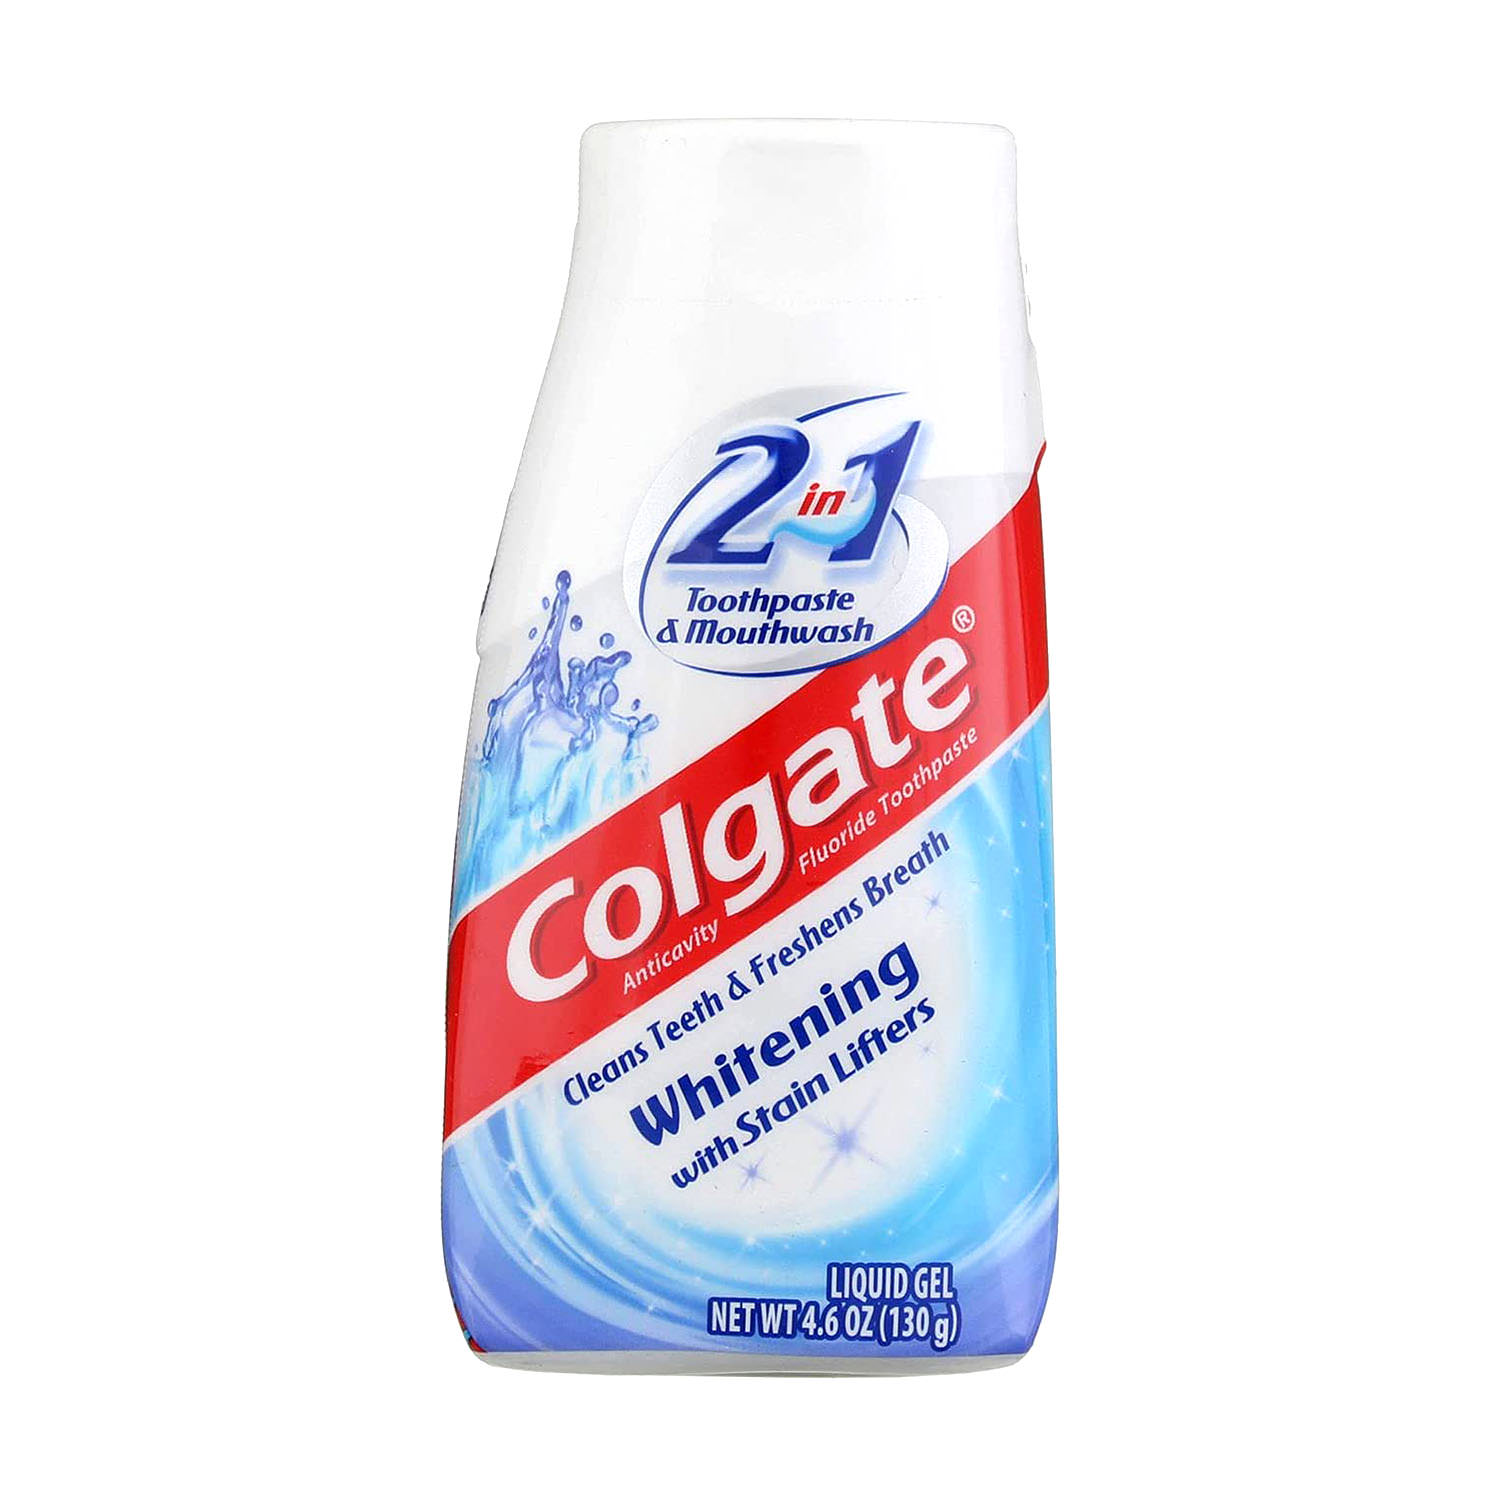 ⚠️ [Hết hàng]Kem đánh răng Colgate 2 in 1 Whitening with Stain Lifters 130g từ Mỹ